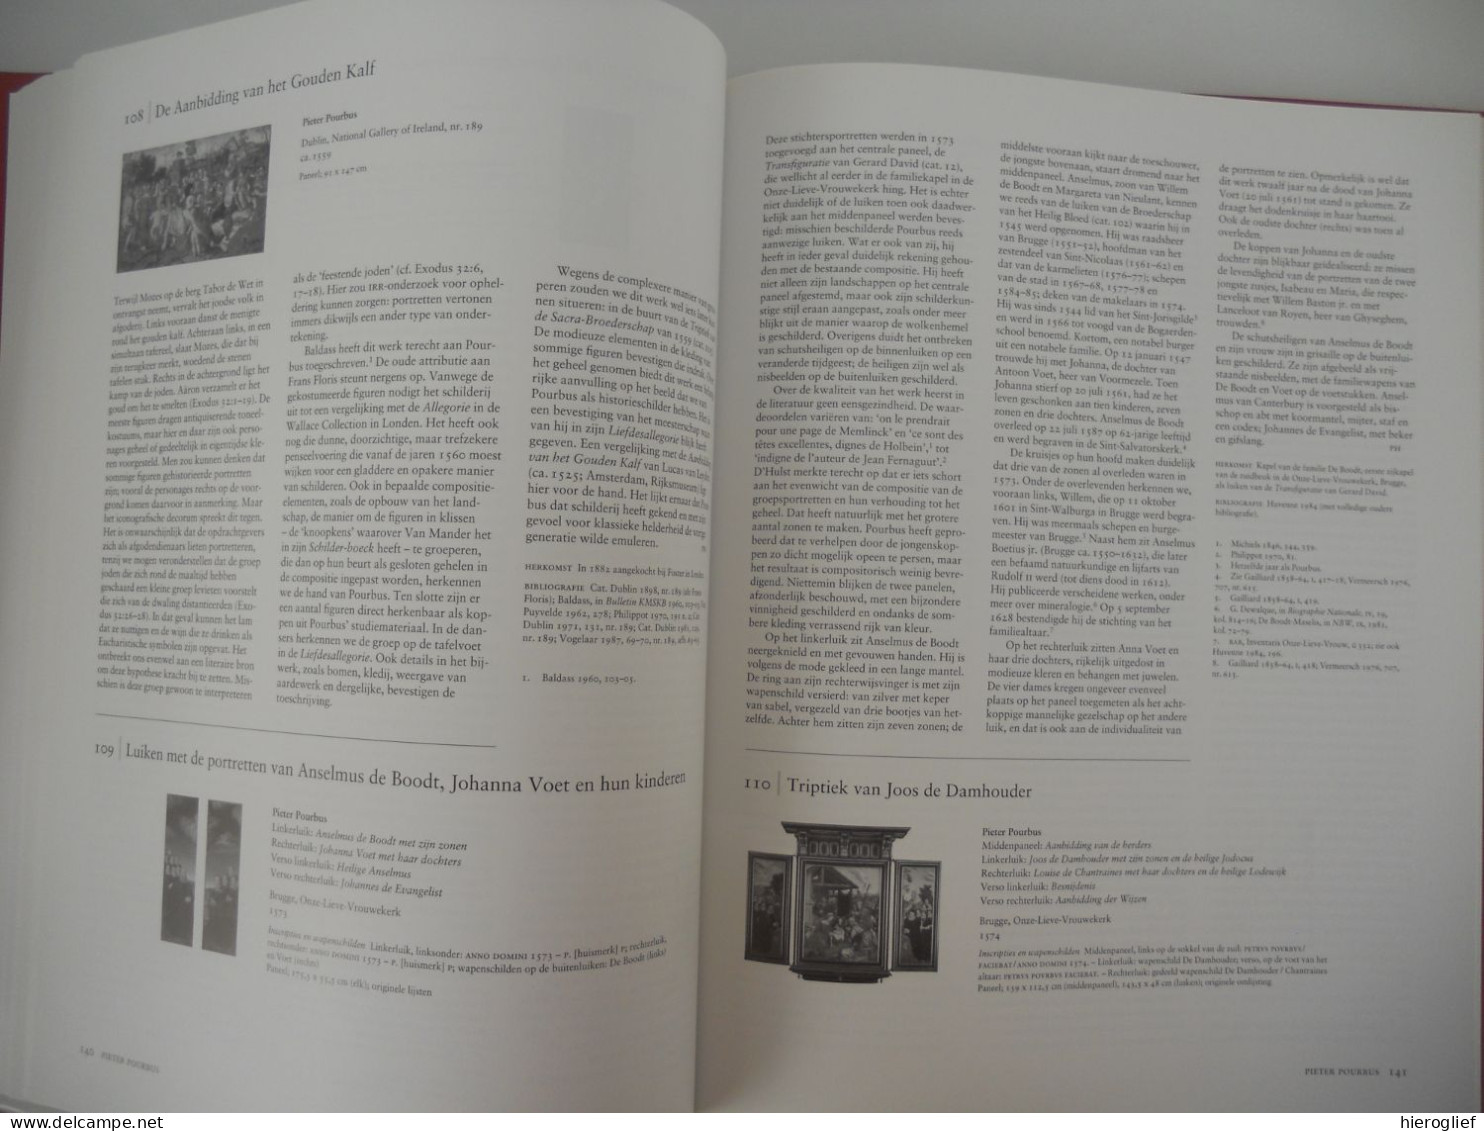 Brugge en de Renaissance - van Memling tot Pourbus / 2 delen - catalogus + notities expo 1998 museum Groeninge